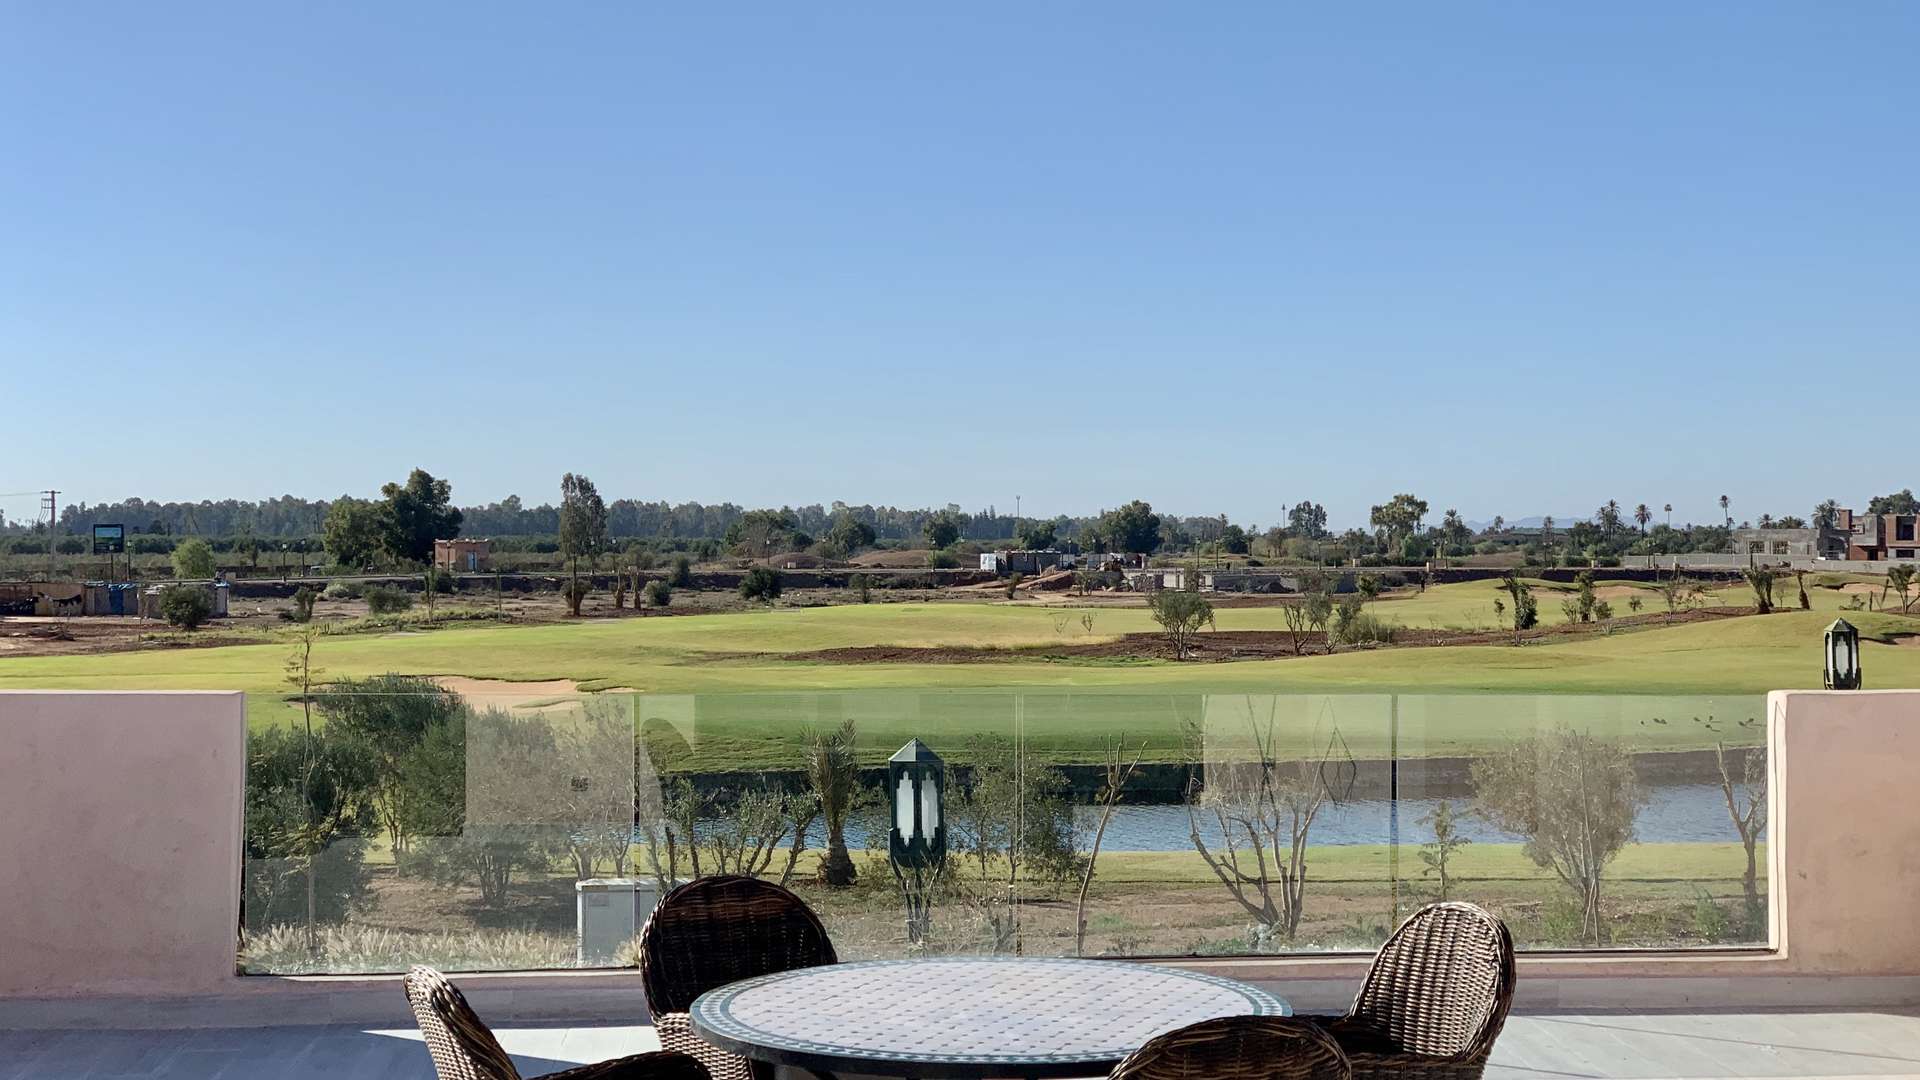 Vente,Villa,Villa neuve de style contemporain sur le golf d'Amelkis à Marrakech,Marrakech,Amelkis Golf Resort